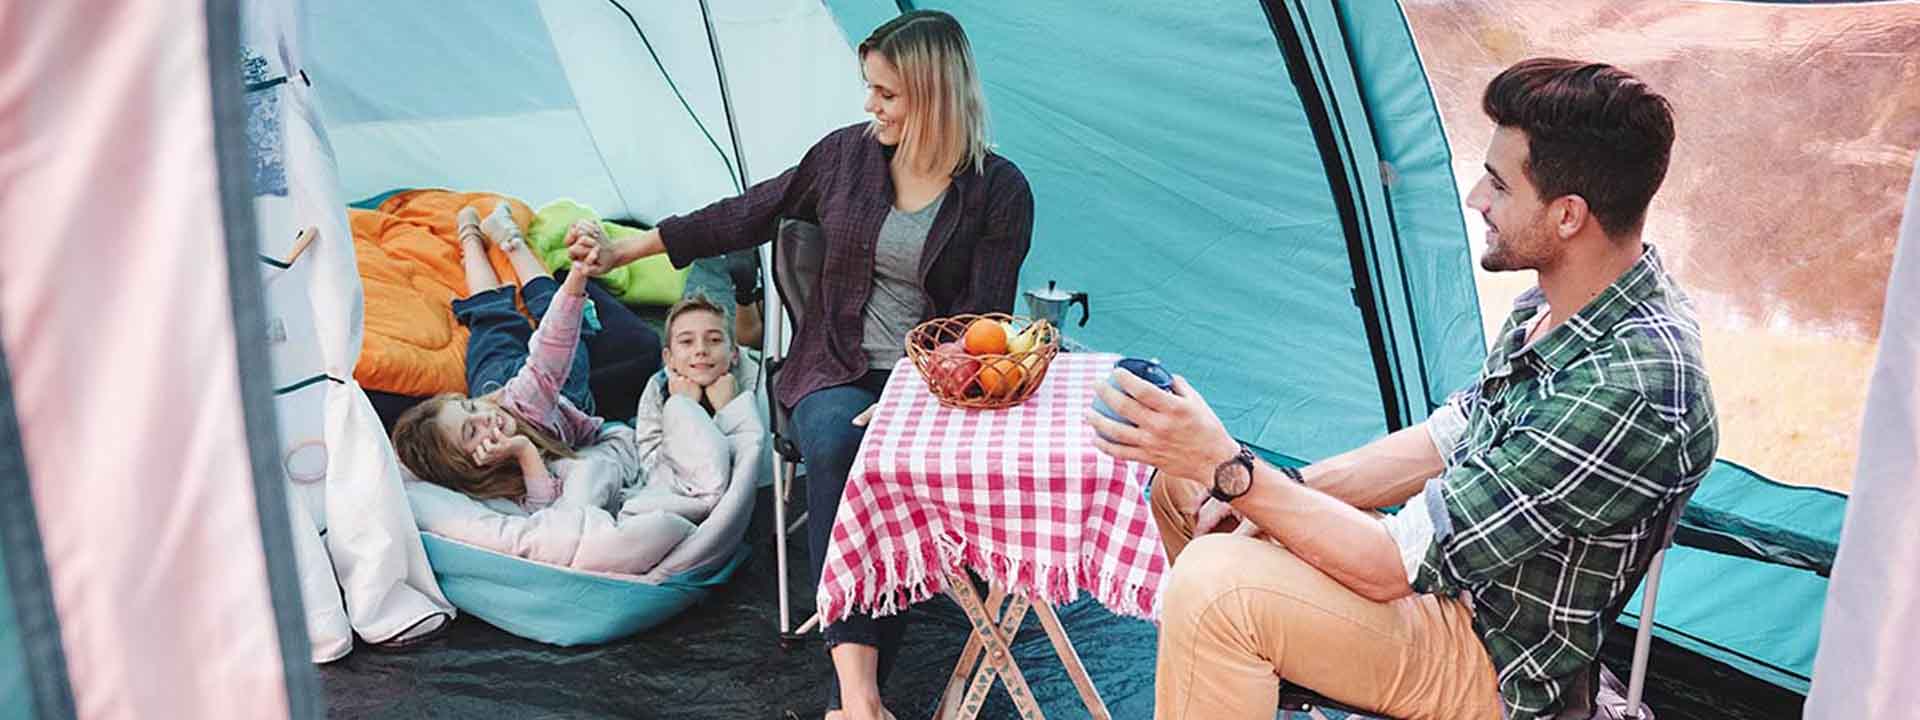 Camping en familia, ¿qué llevar para disfrutar de la experiencia?